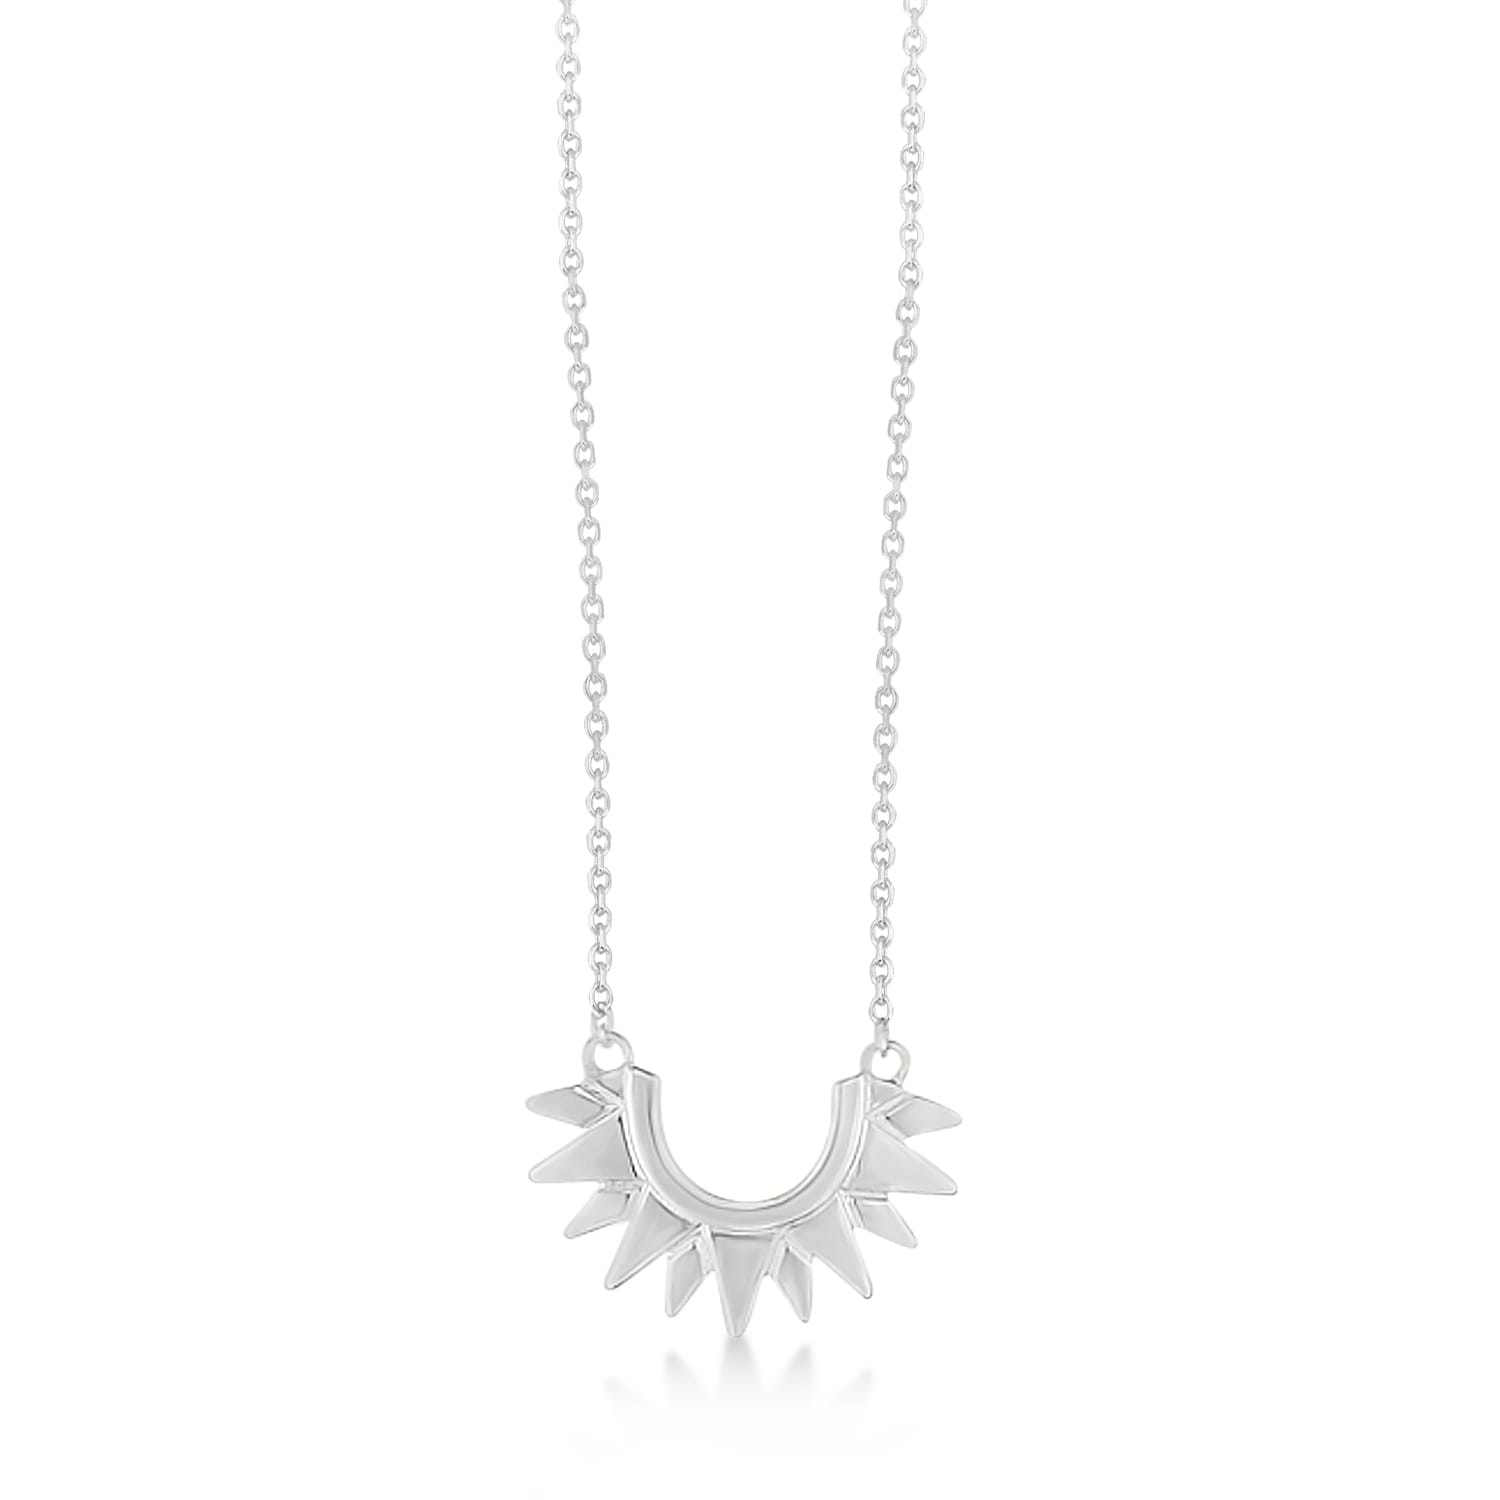 Sunburst Shaped Pendant Necklace 14k White Gold